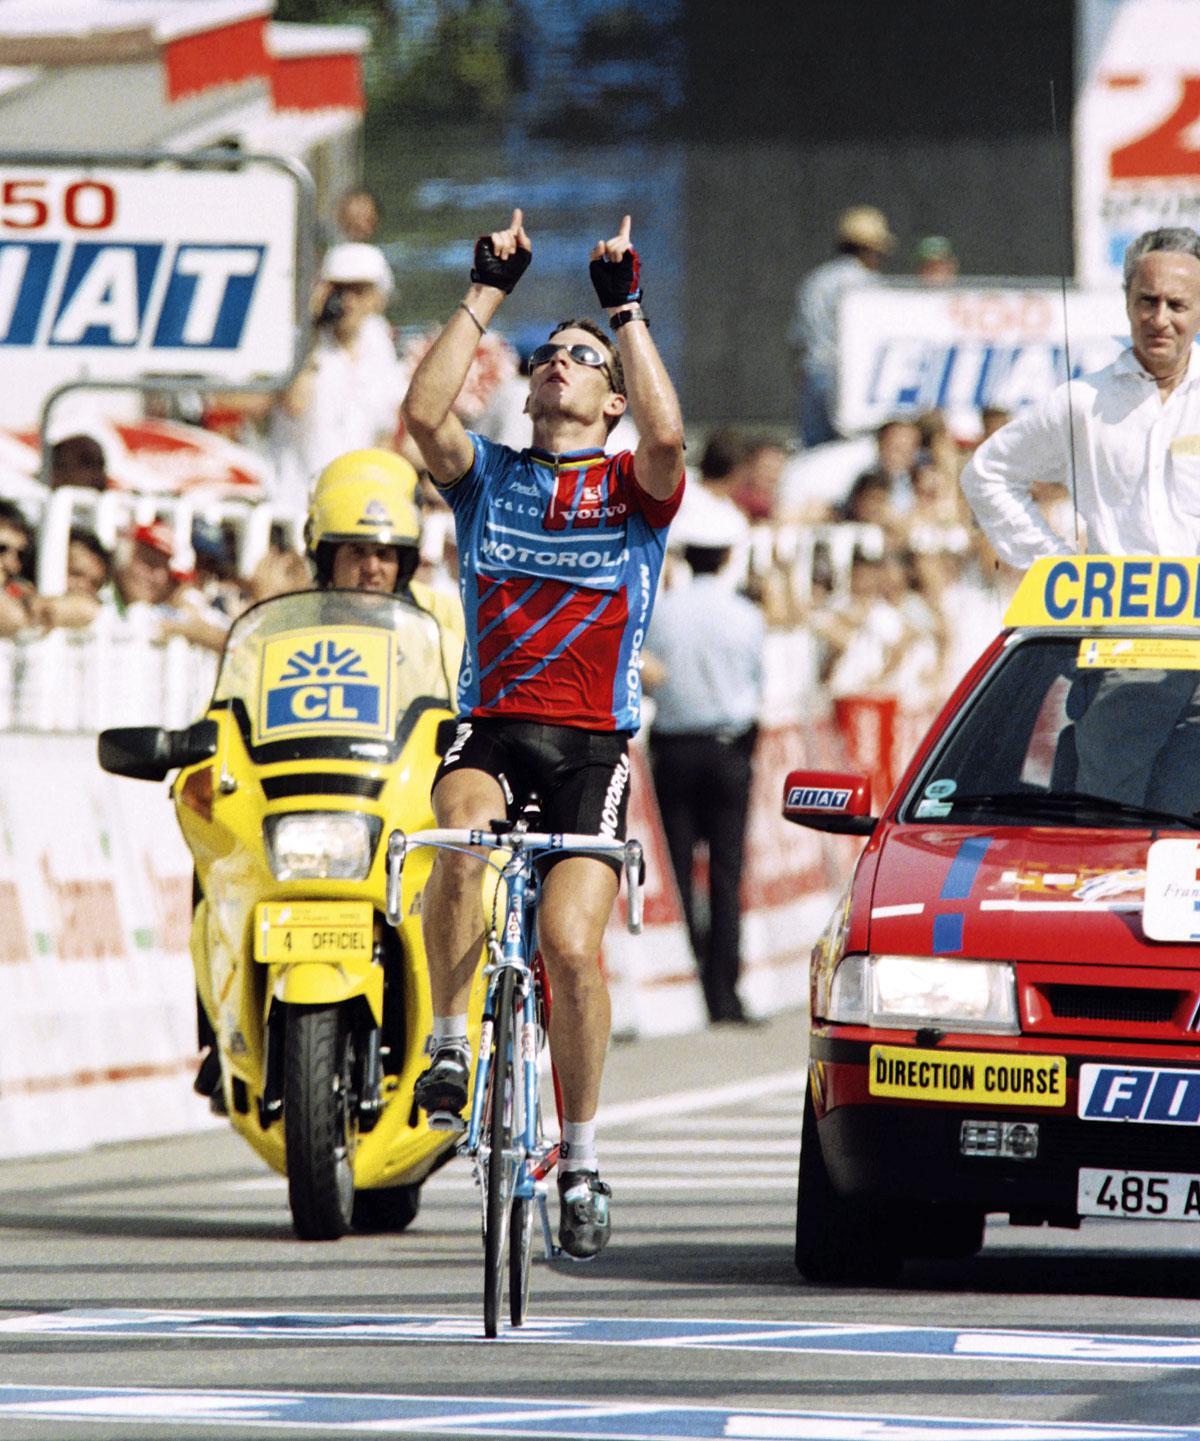 Het eerbetoon van Lance Armstrong aan de verongelukte Fabio Casartelli.